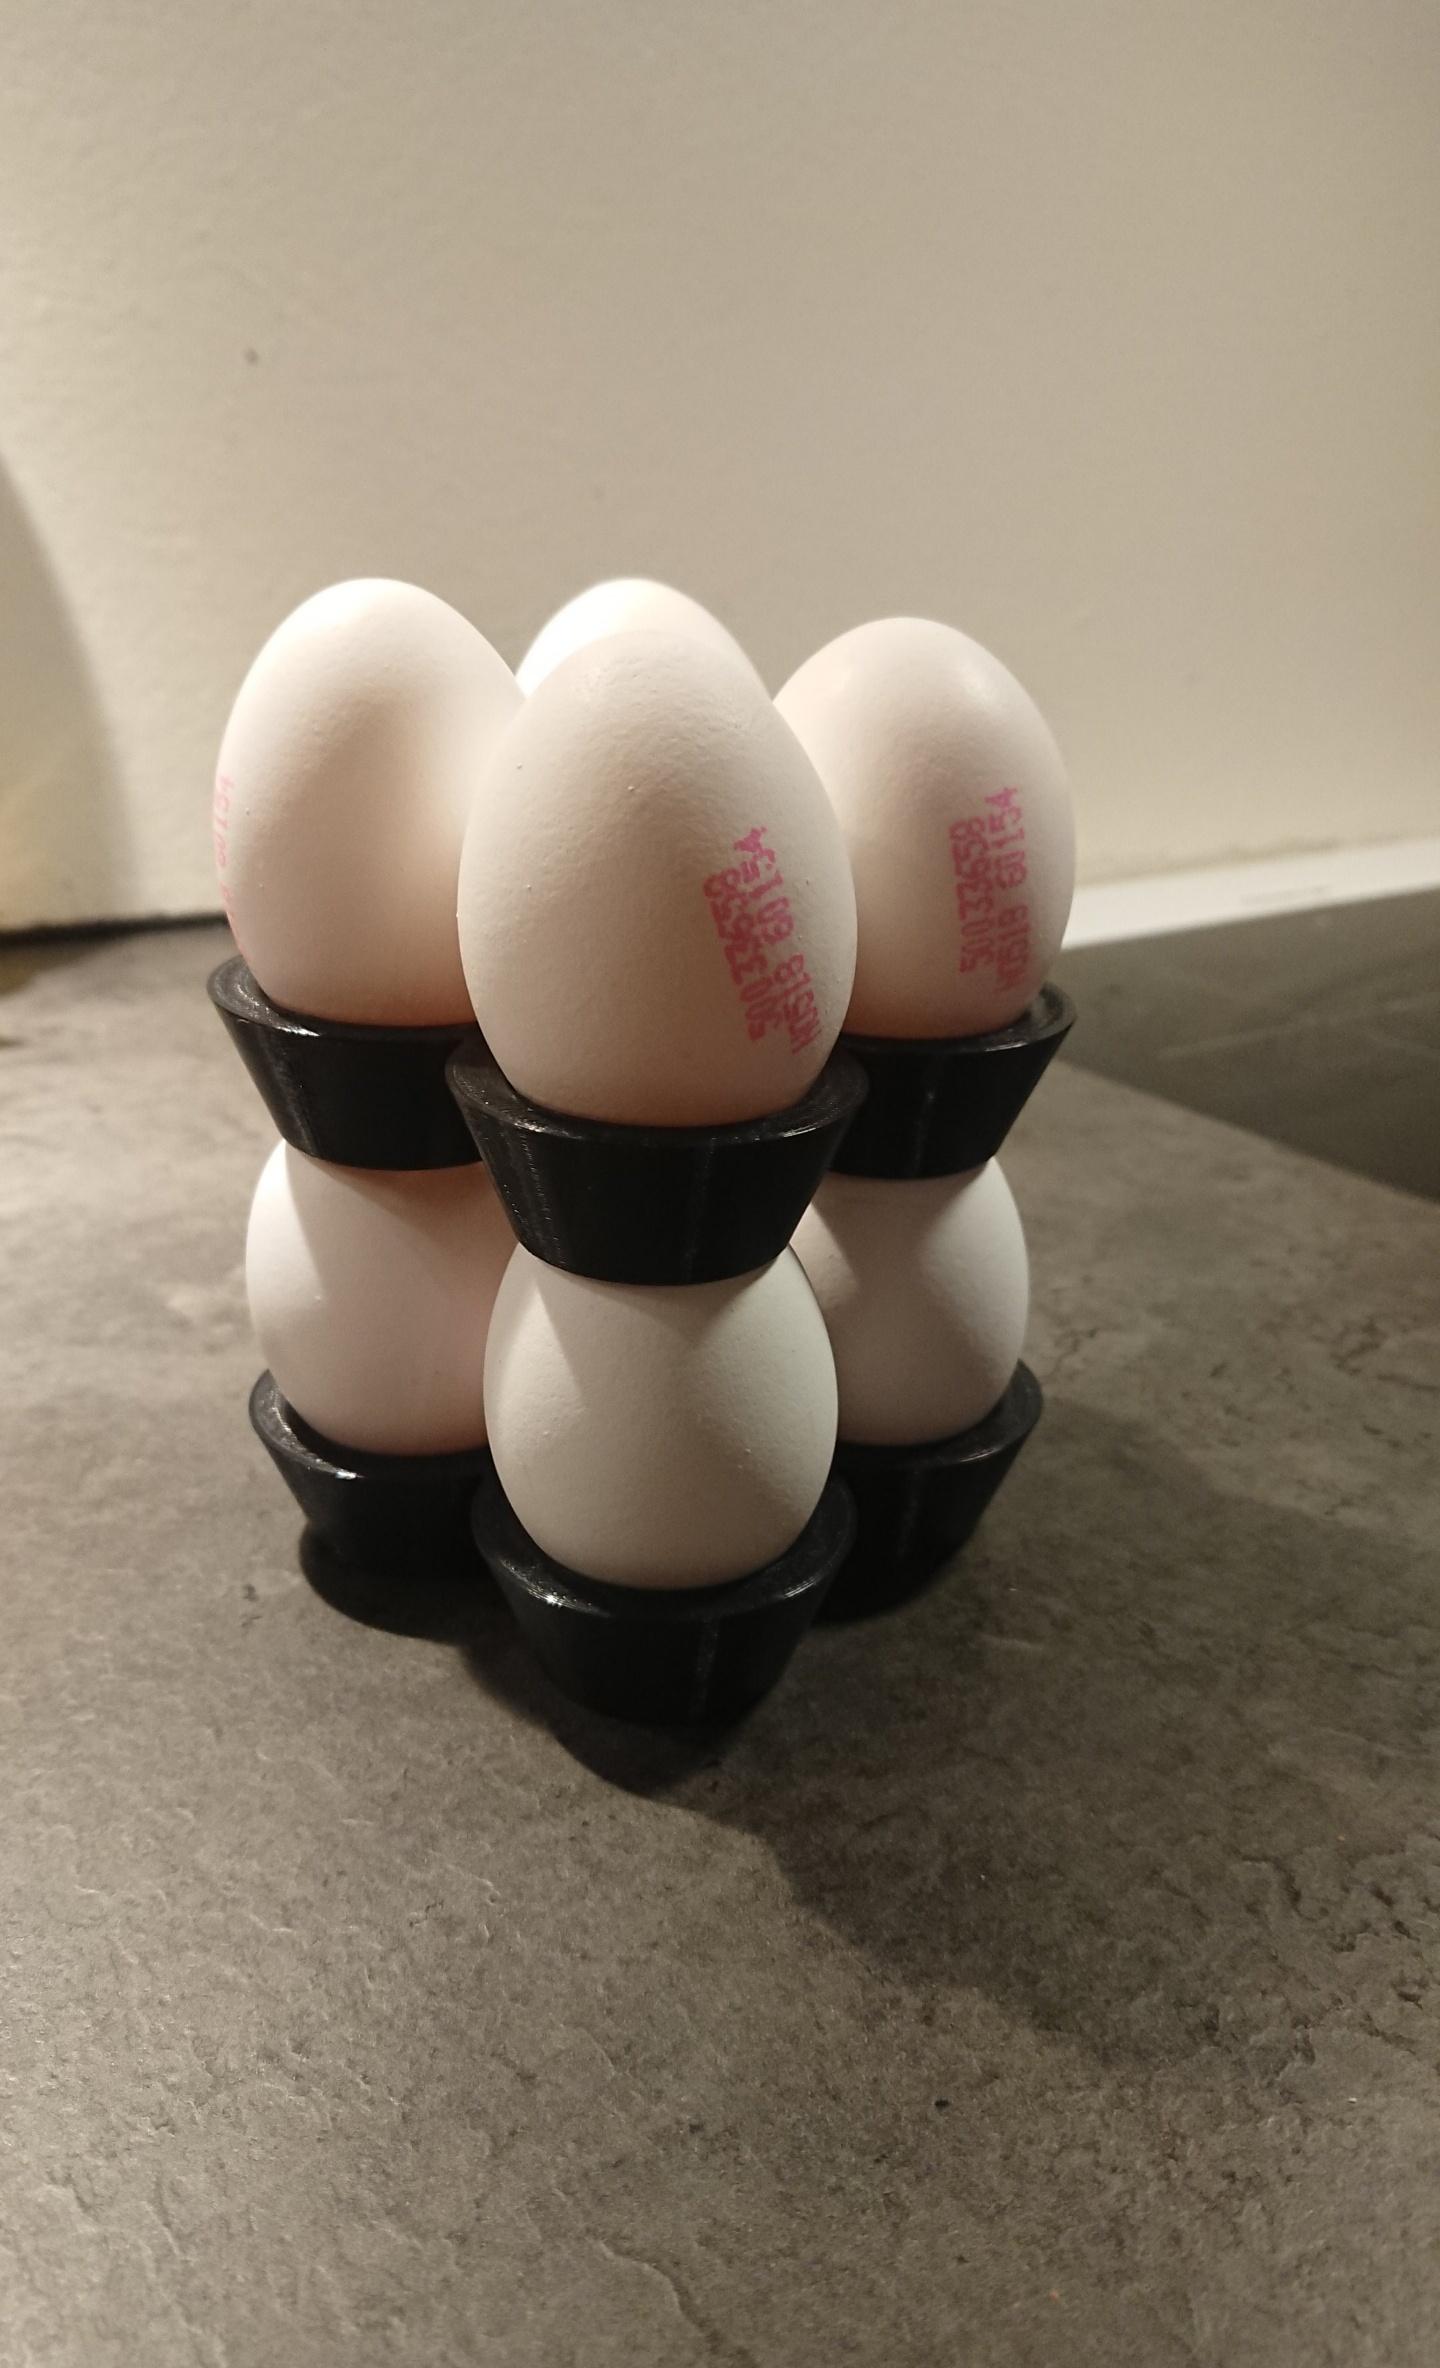 Eggholder 3d model